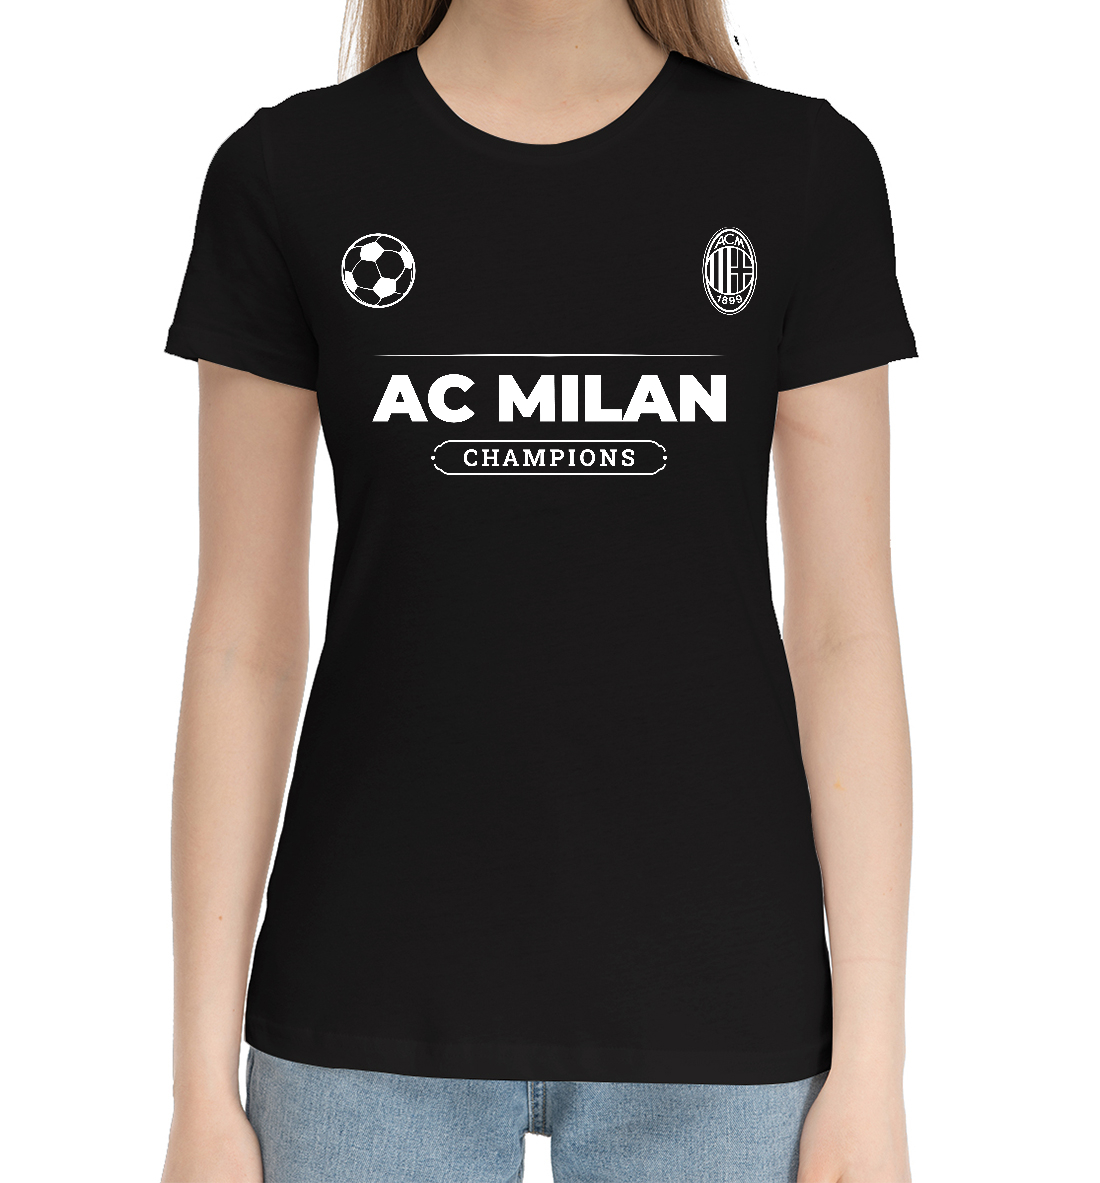 Женская Хлопковая футболка AC Milan Форма Чемпионов, артикул ACM-461376-hfu-1mp